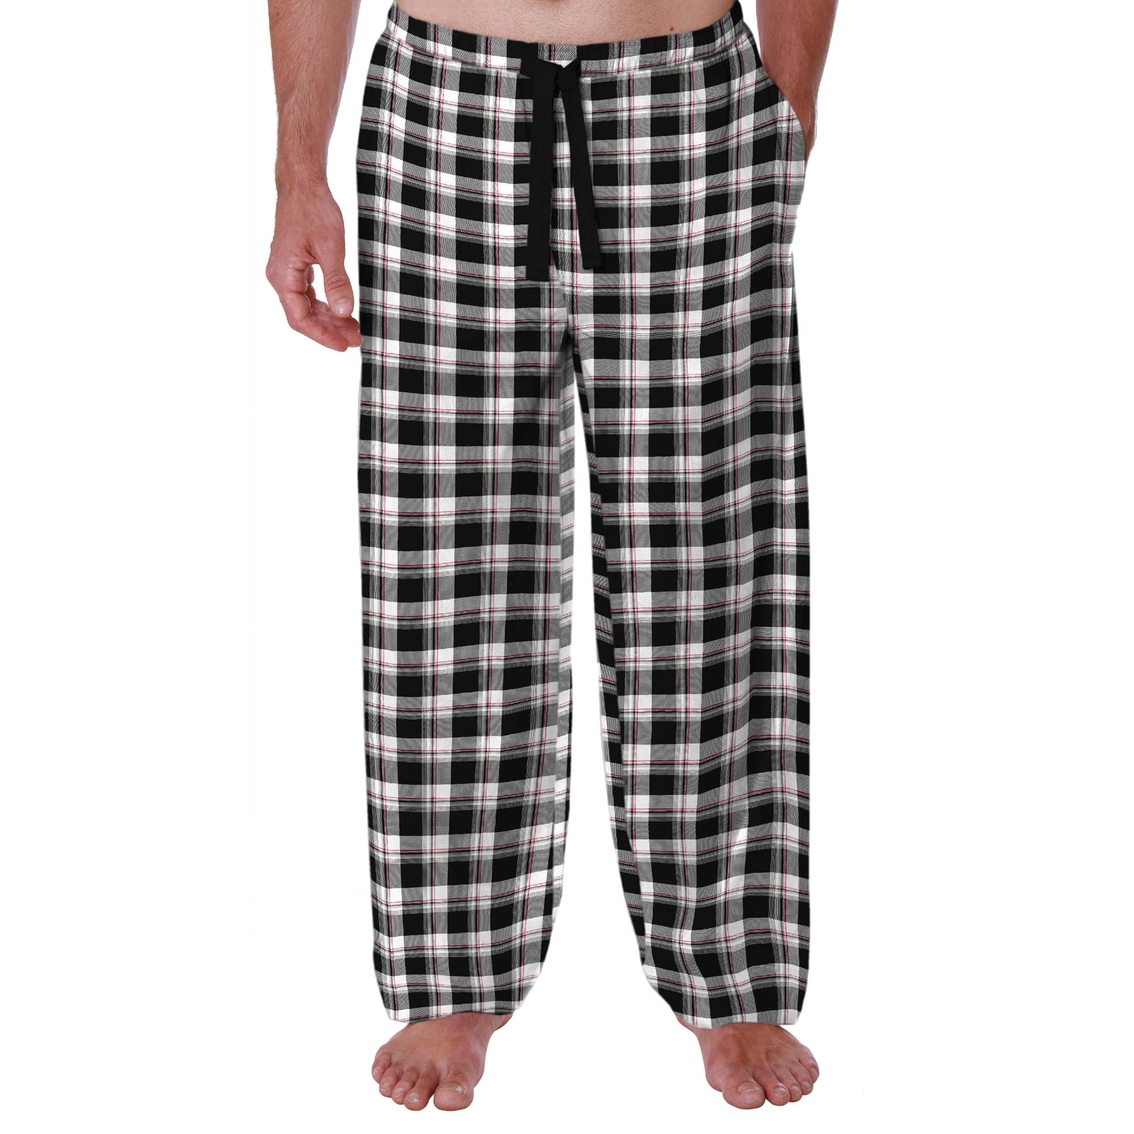 Izod Polyester Rayon Sleep Pants | Pajamas & Robes | Clothing ...